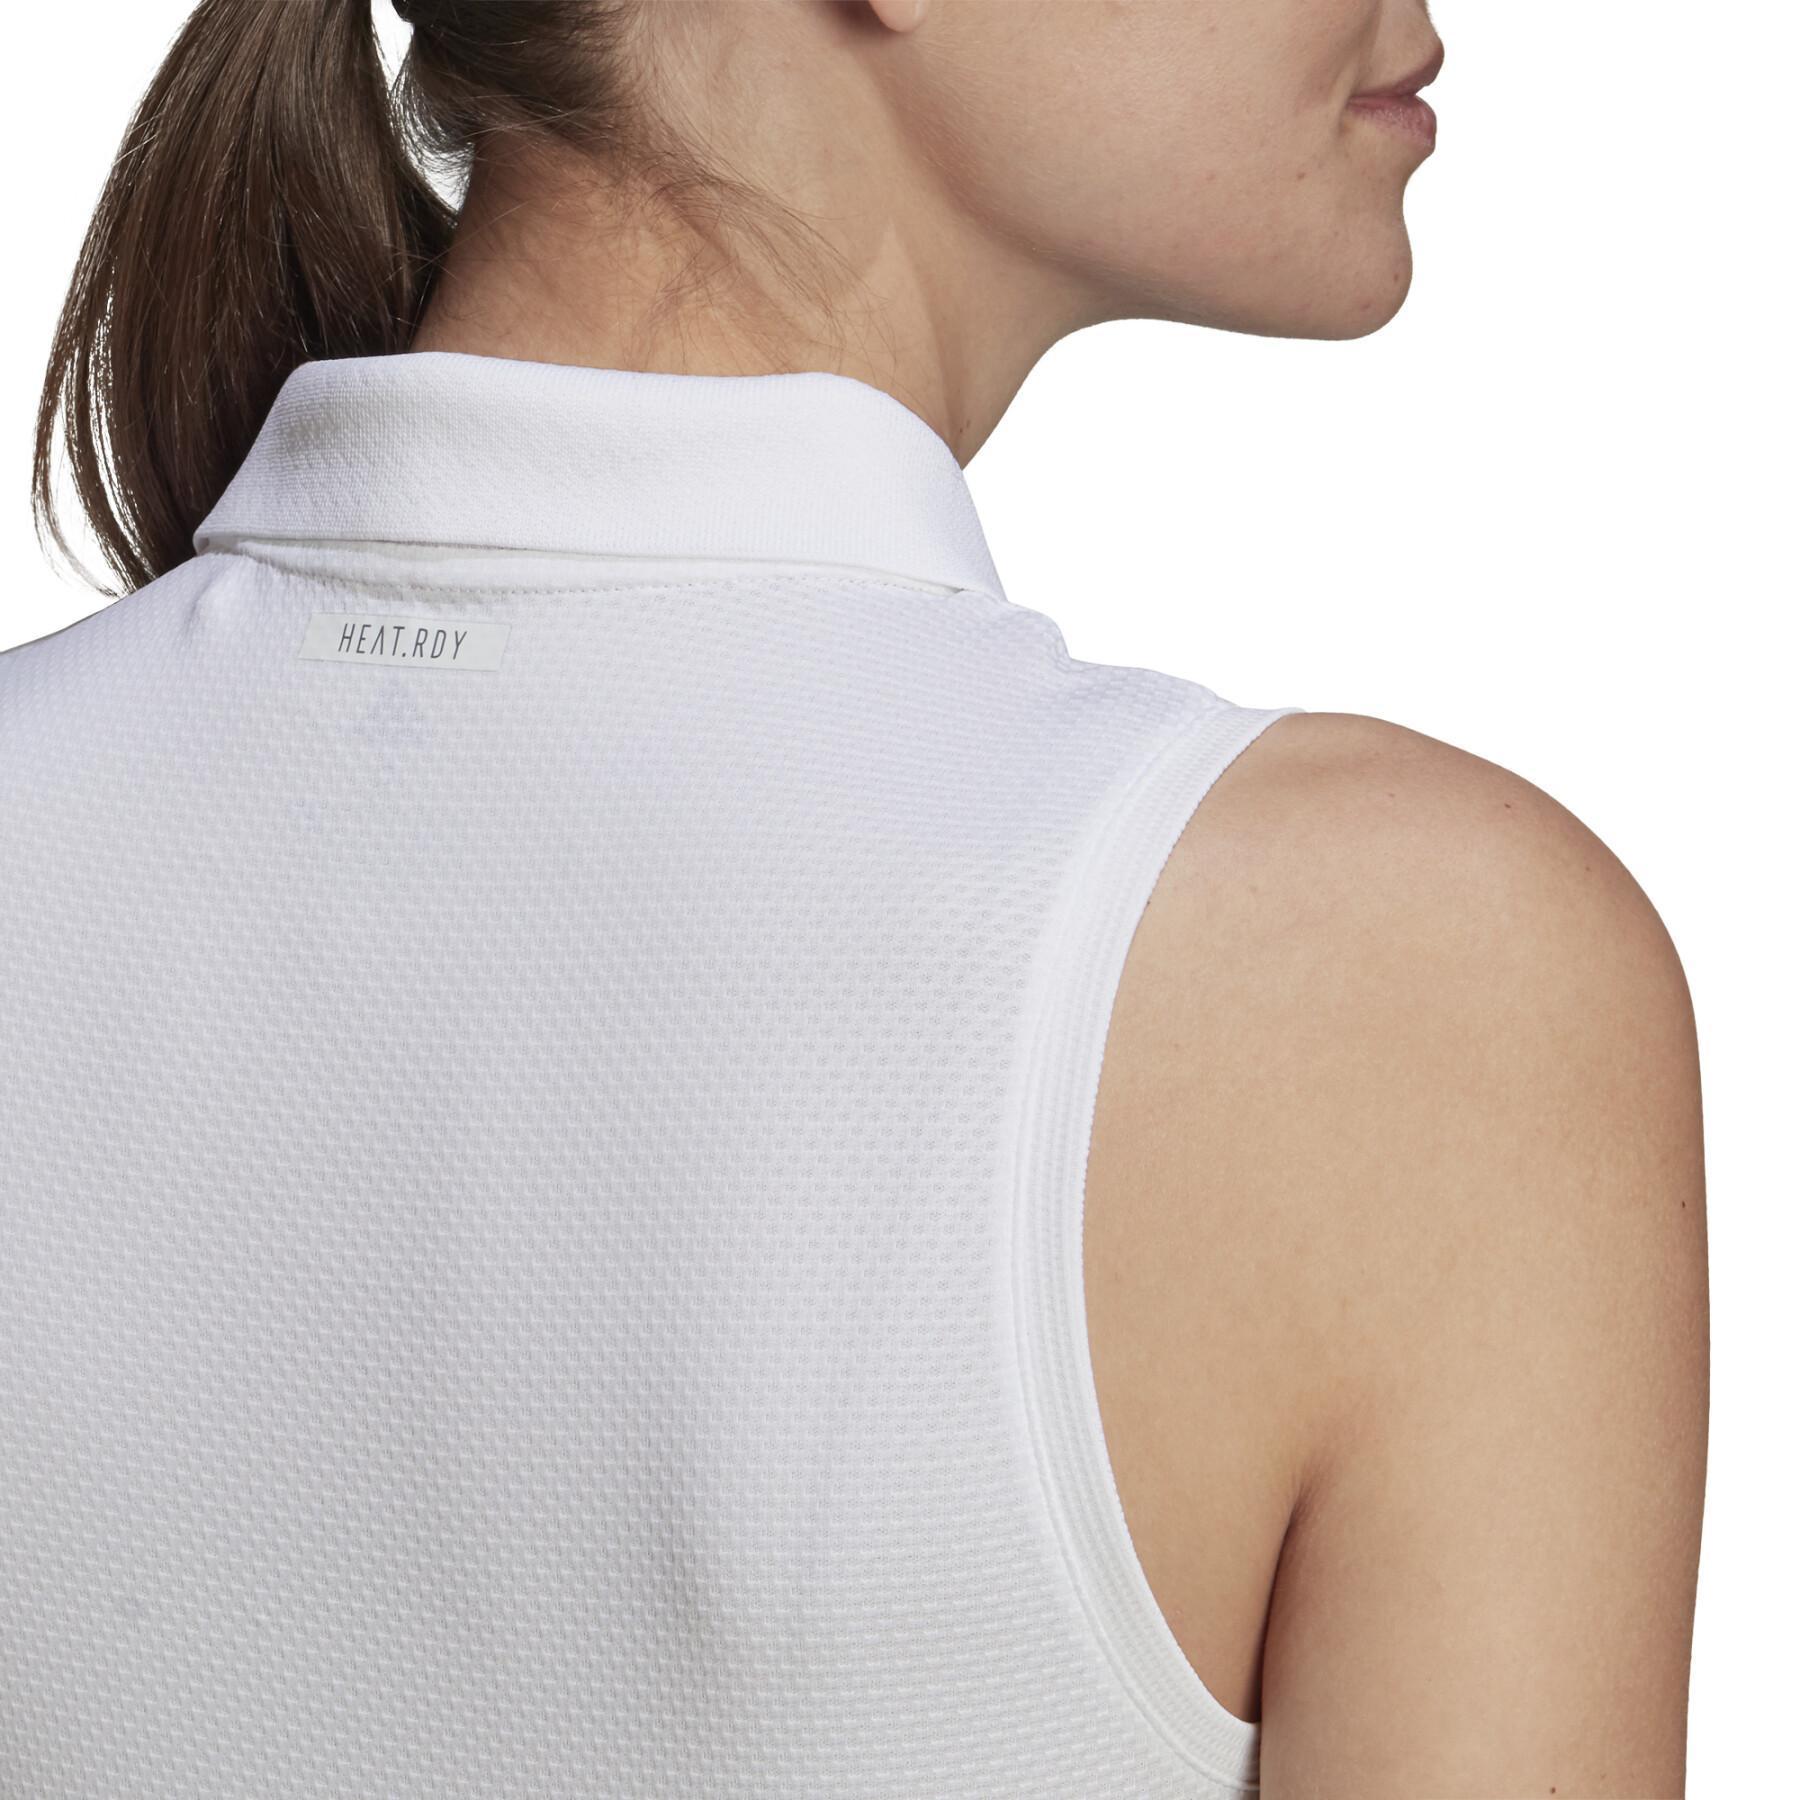 Camiseta de tirantes para mujer adidas Tennis Match Heat.RDY